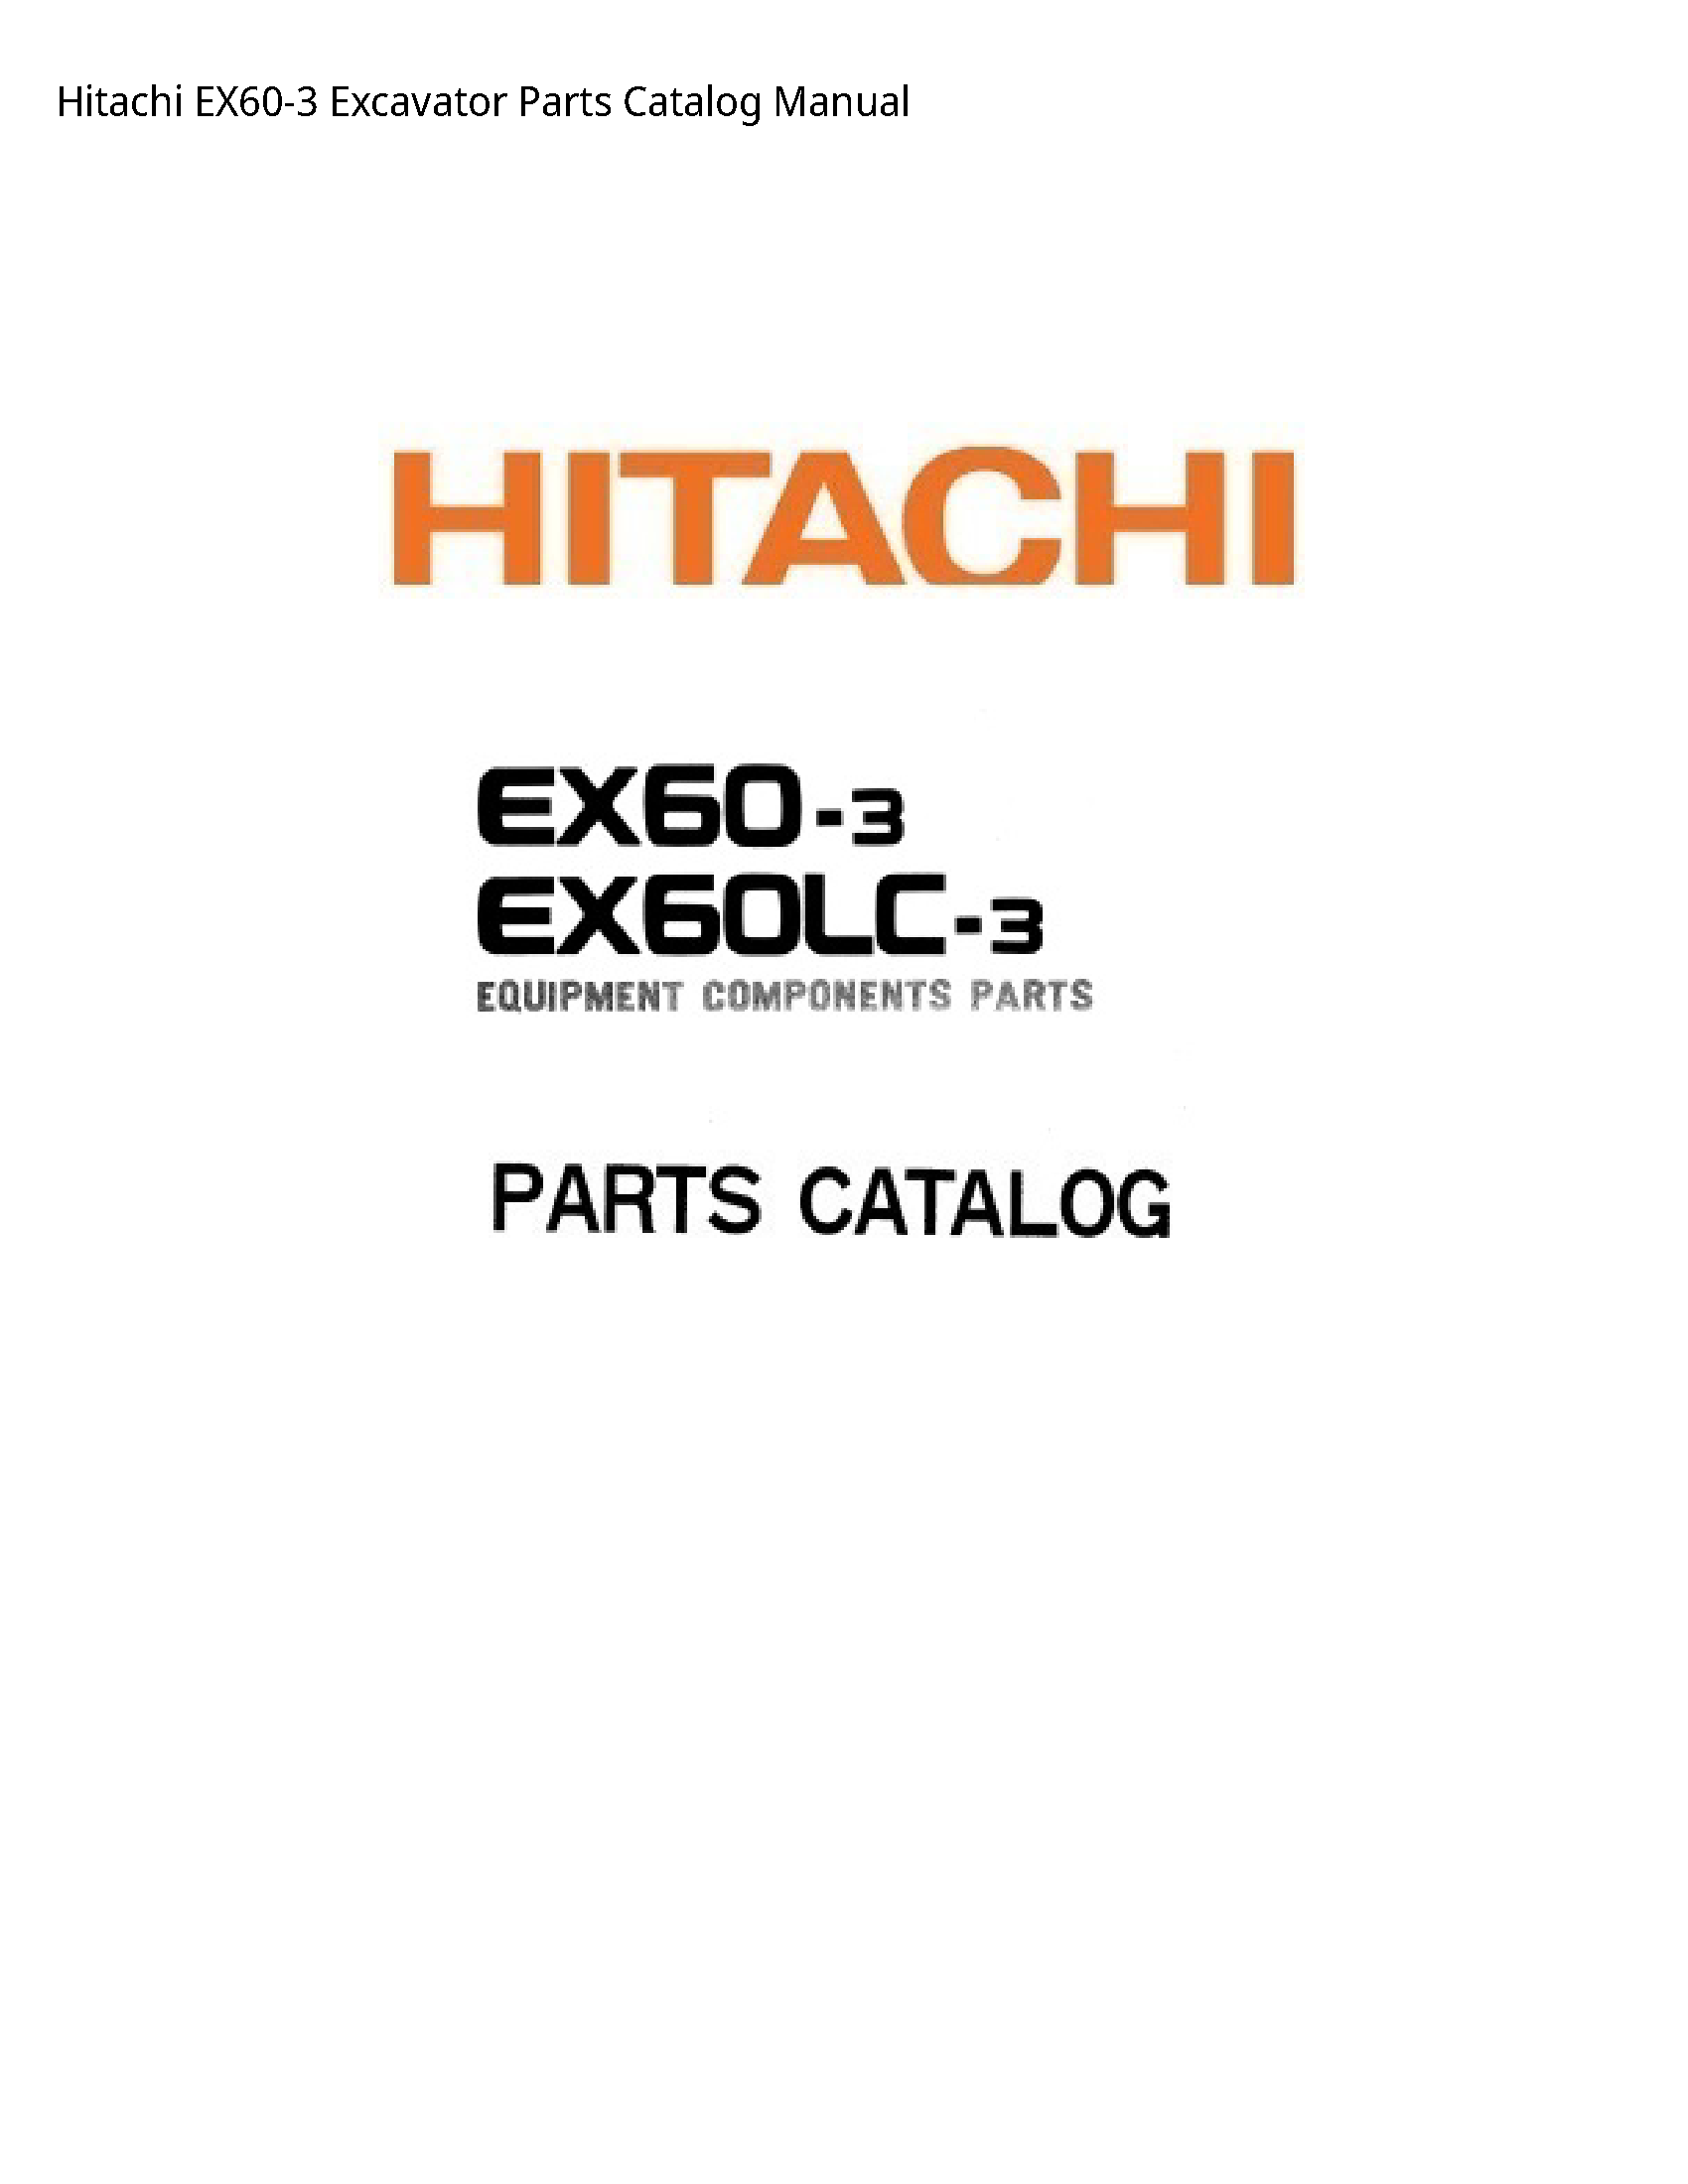 Hitachi EX60-3 Excavator Parts Catalog manual